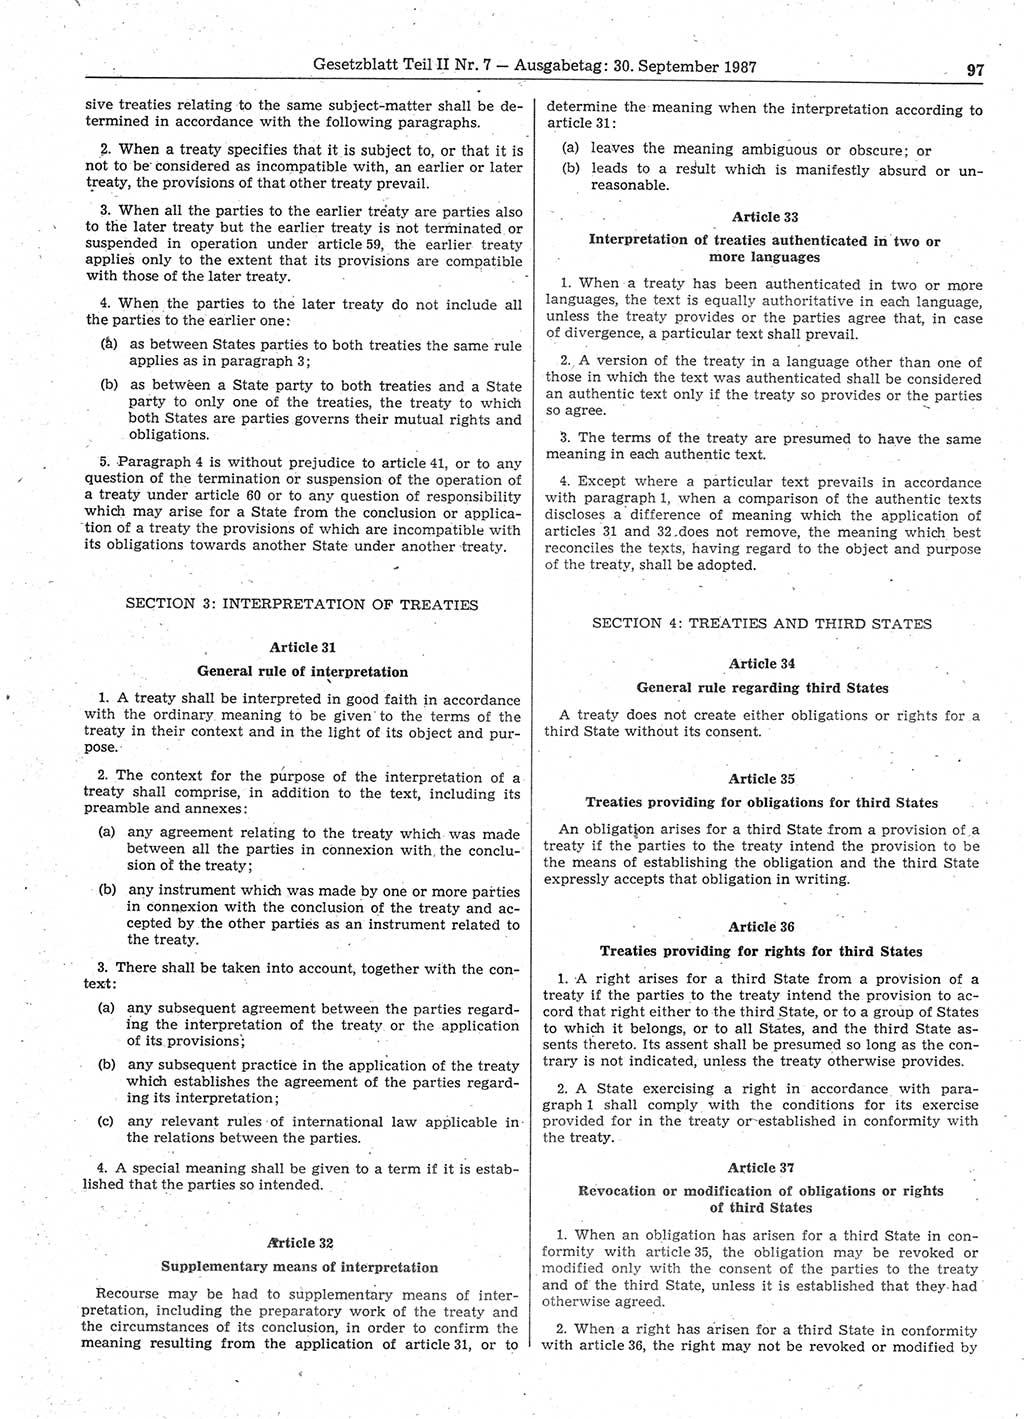 Gesetzblatt (GBl.) der Deutschen Demokratischen Republik (DDR) Teil ⅠⅠ 1987, Seite 97 (GBl. DDR ⅠⅠ 1987, S. 97)